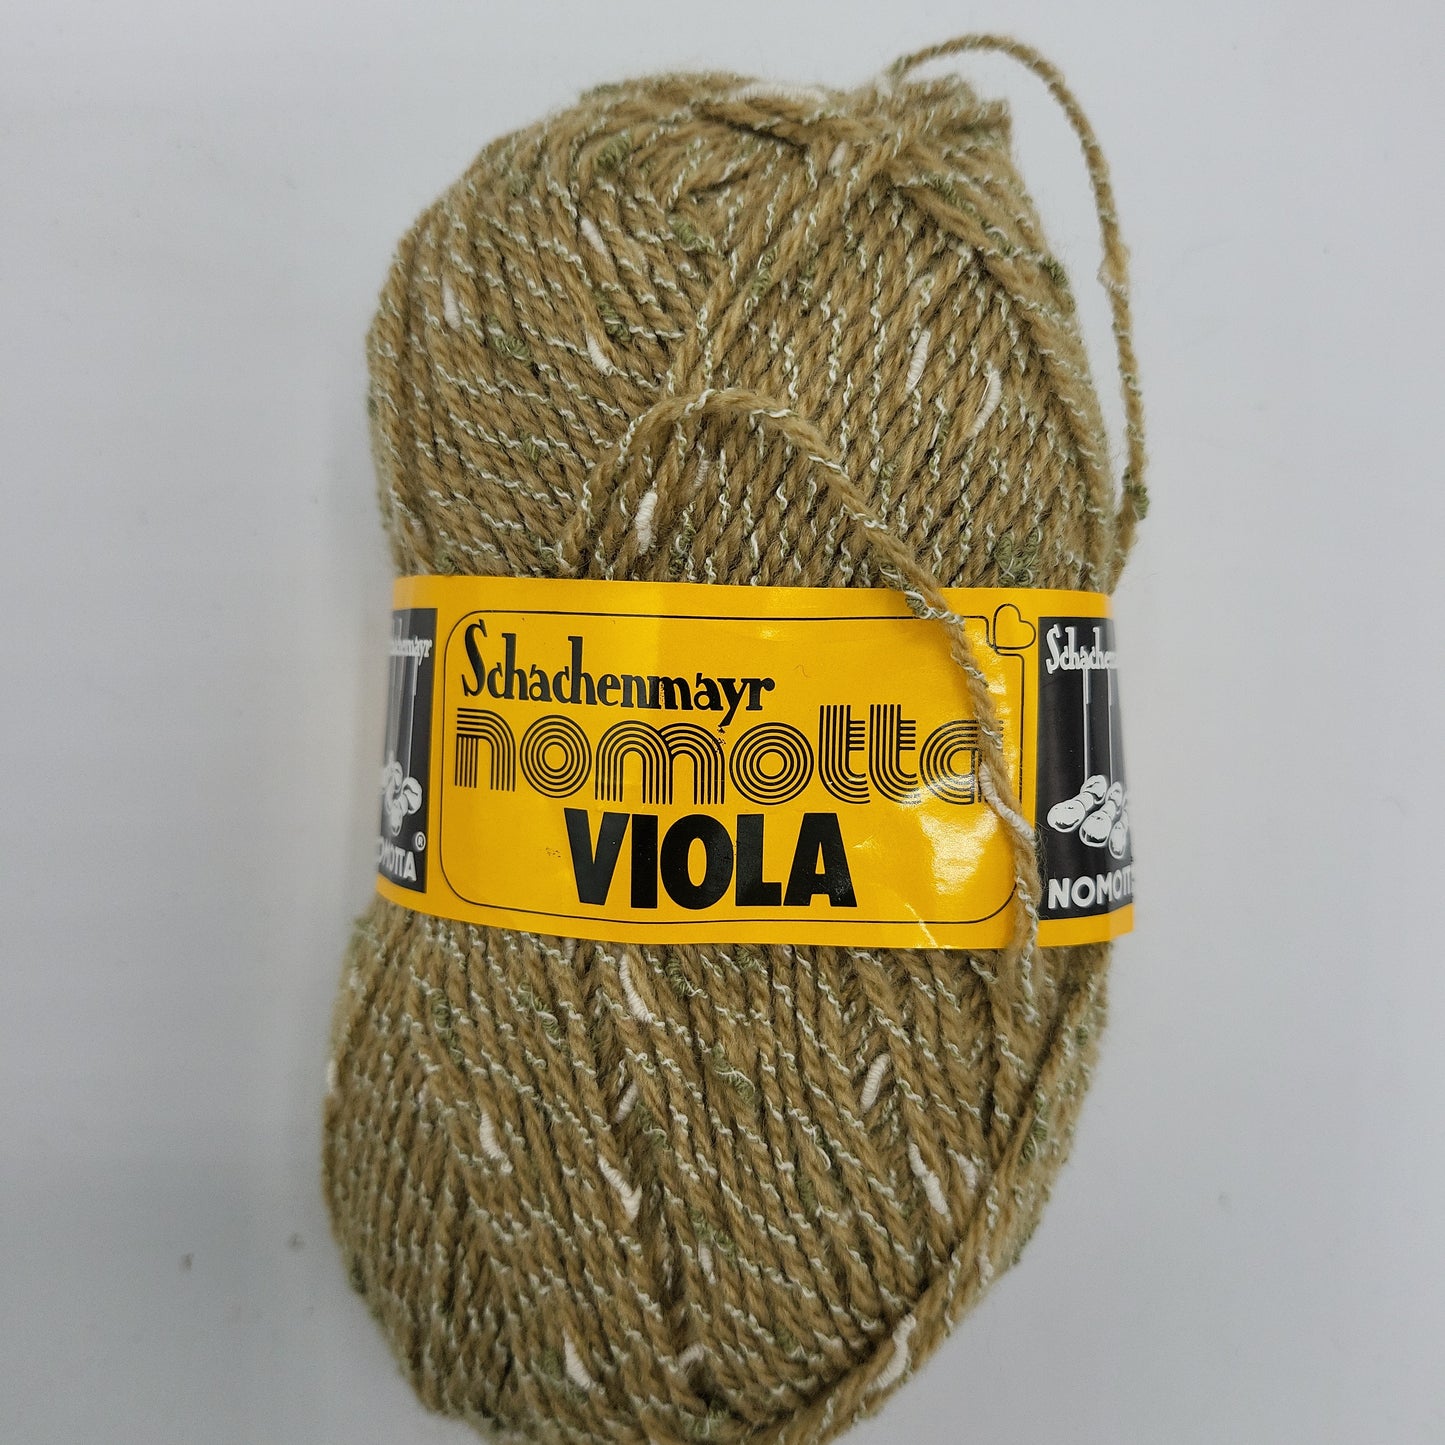 Schachenmayr Nomotta Viola 50g Polyacryl & Baumwolle 145m